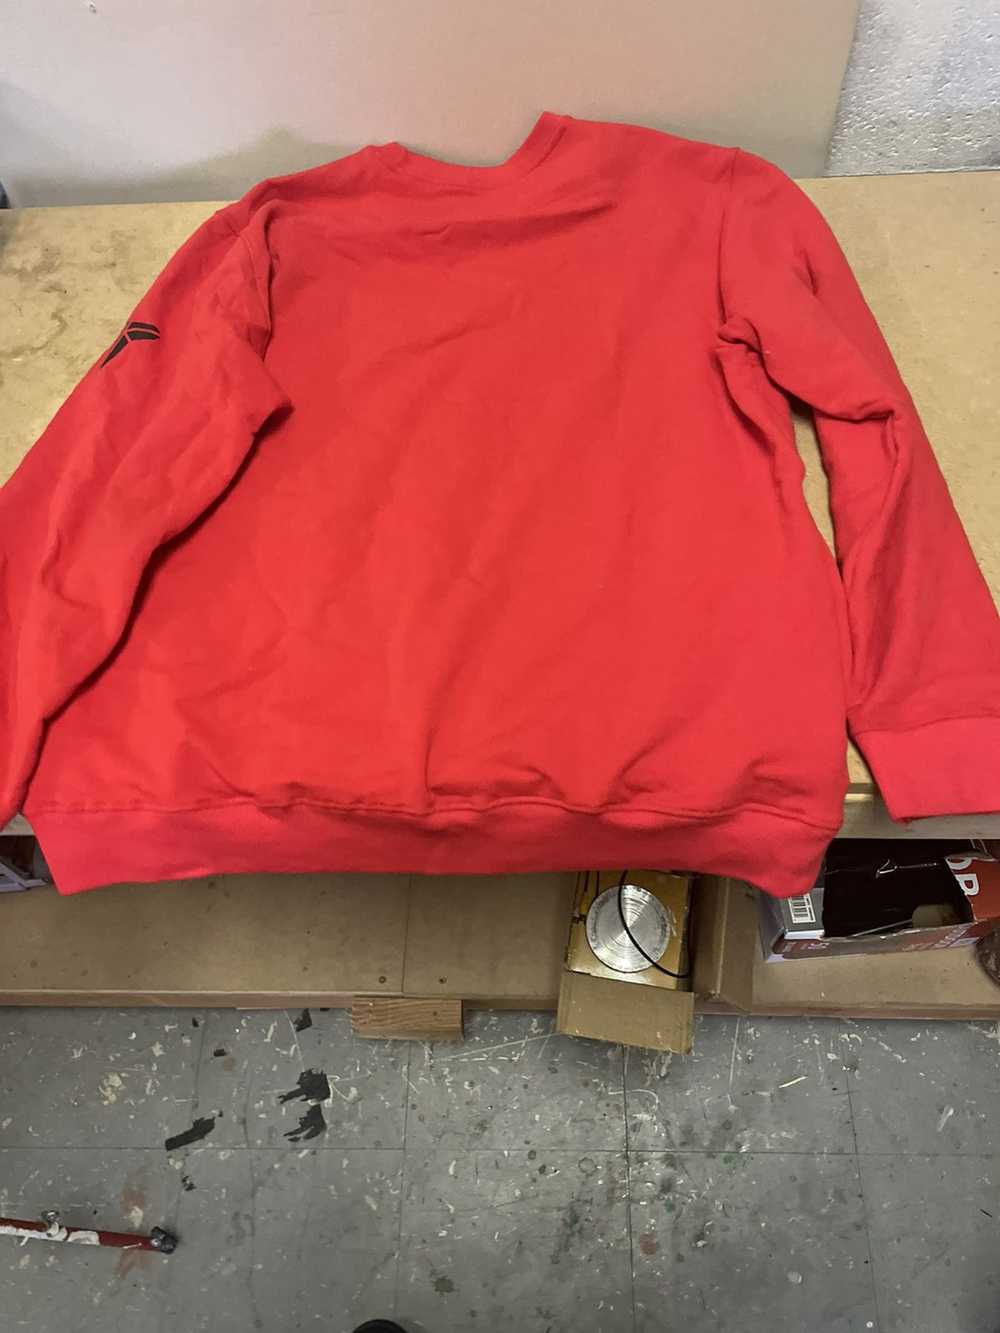 Hudson Outerwear Hudson sweatshirt red Size Large… - image 7